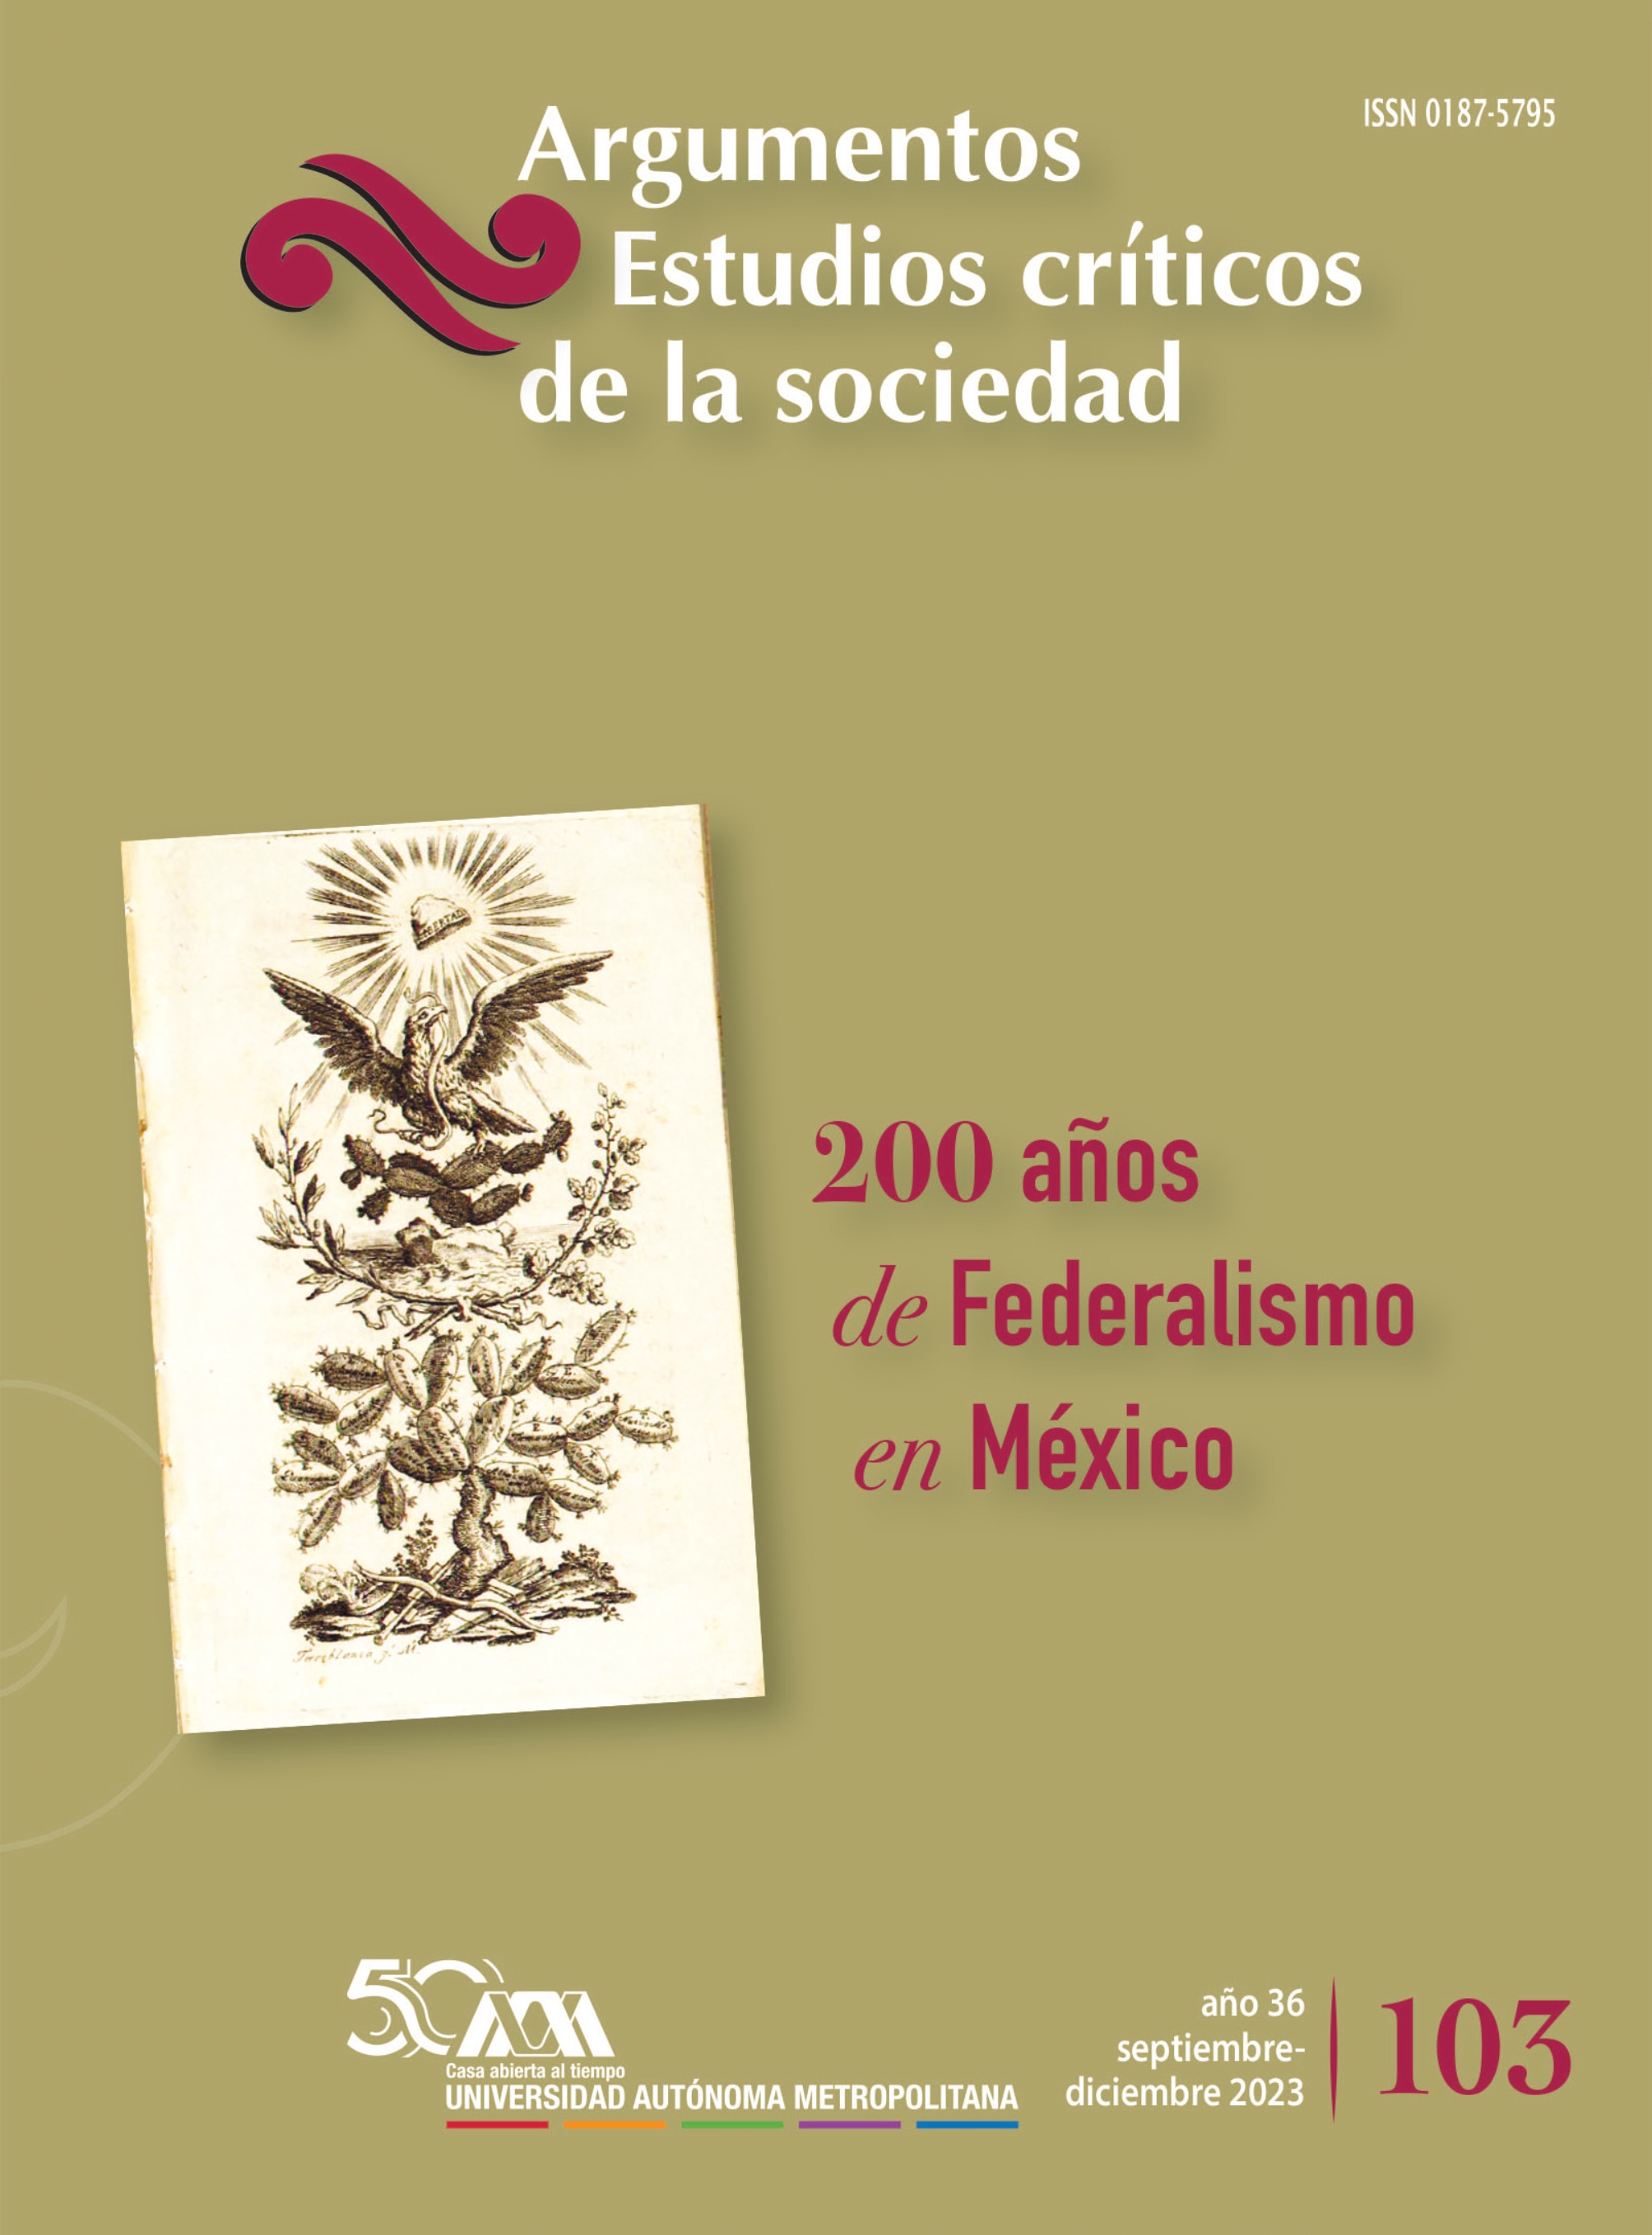 					Ver Núm. 103: "200 años de federalismo en México"
				